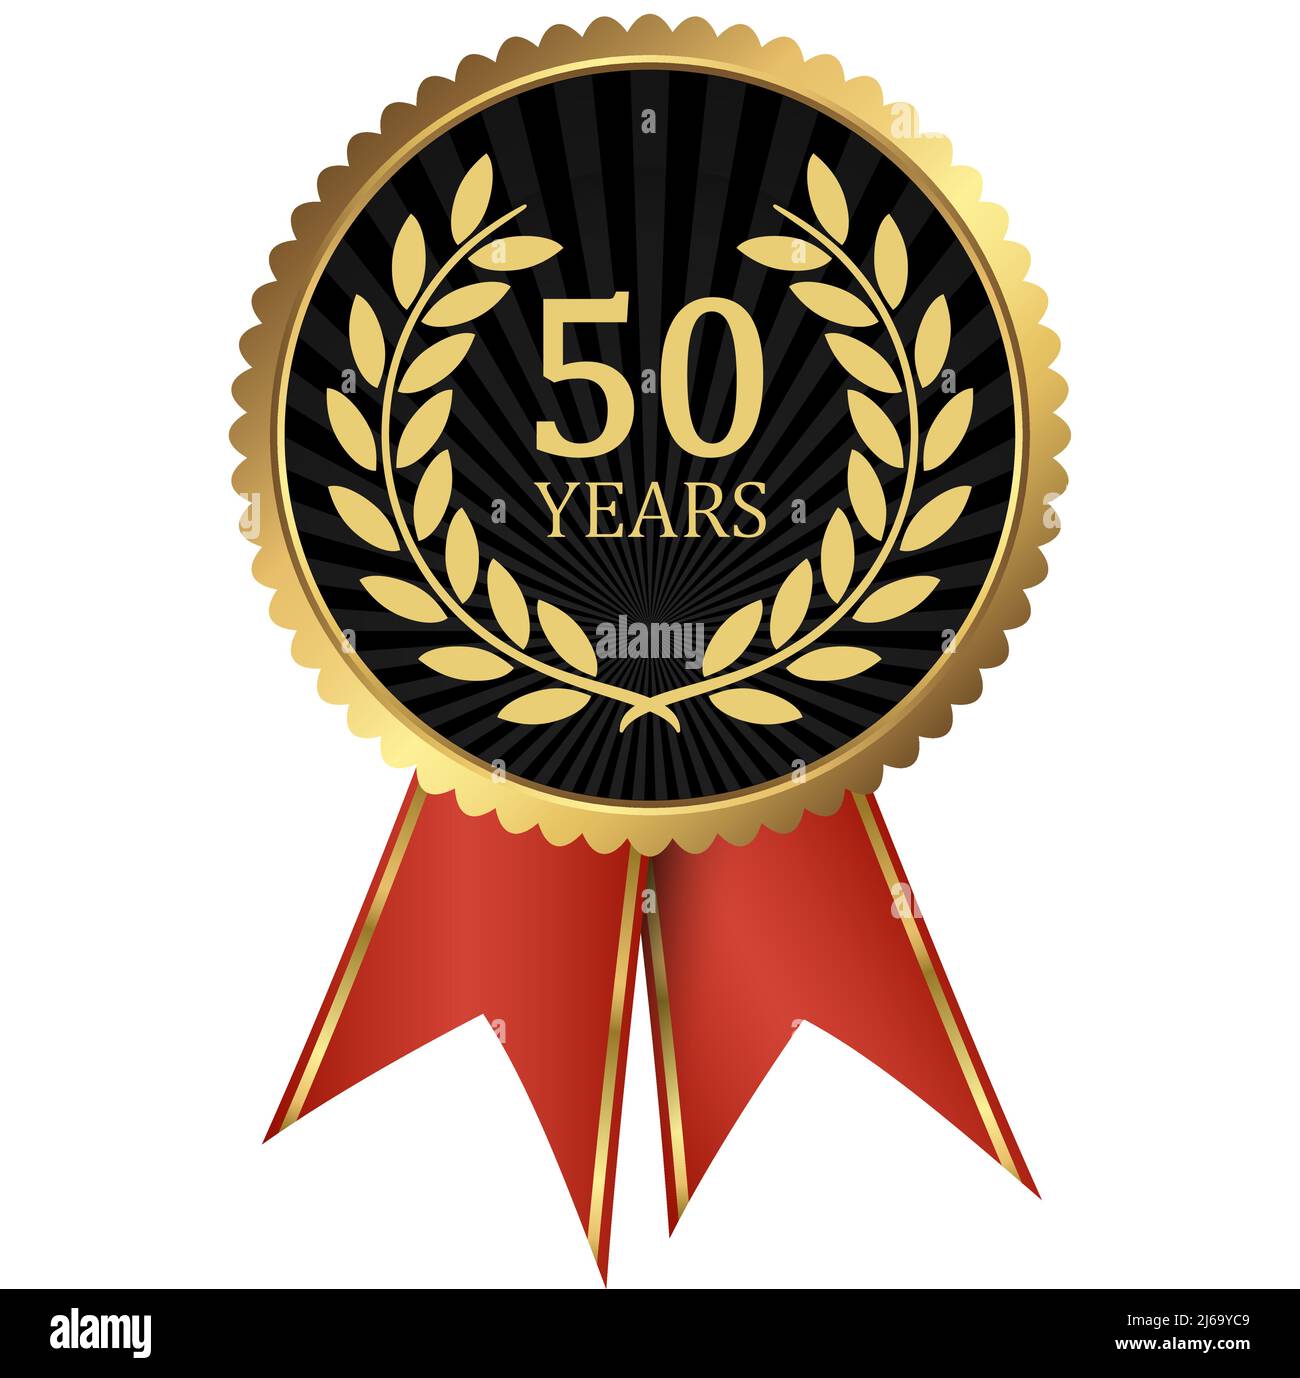 fichier vectoriel eps avec médaillon d'or avec couronne de laurier pour le succès ou jubilé ferme et texte 50 ans Illustration de Vecteur